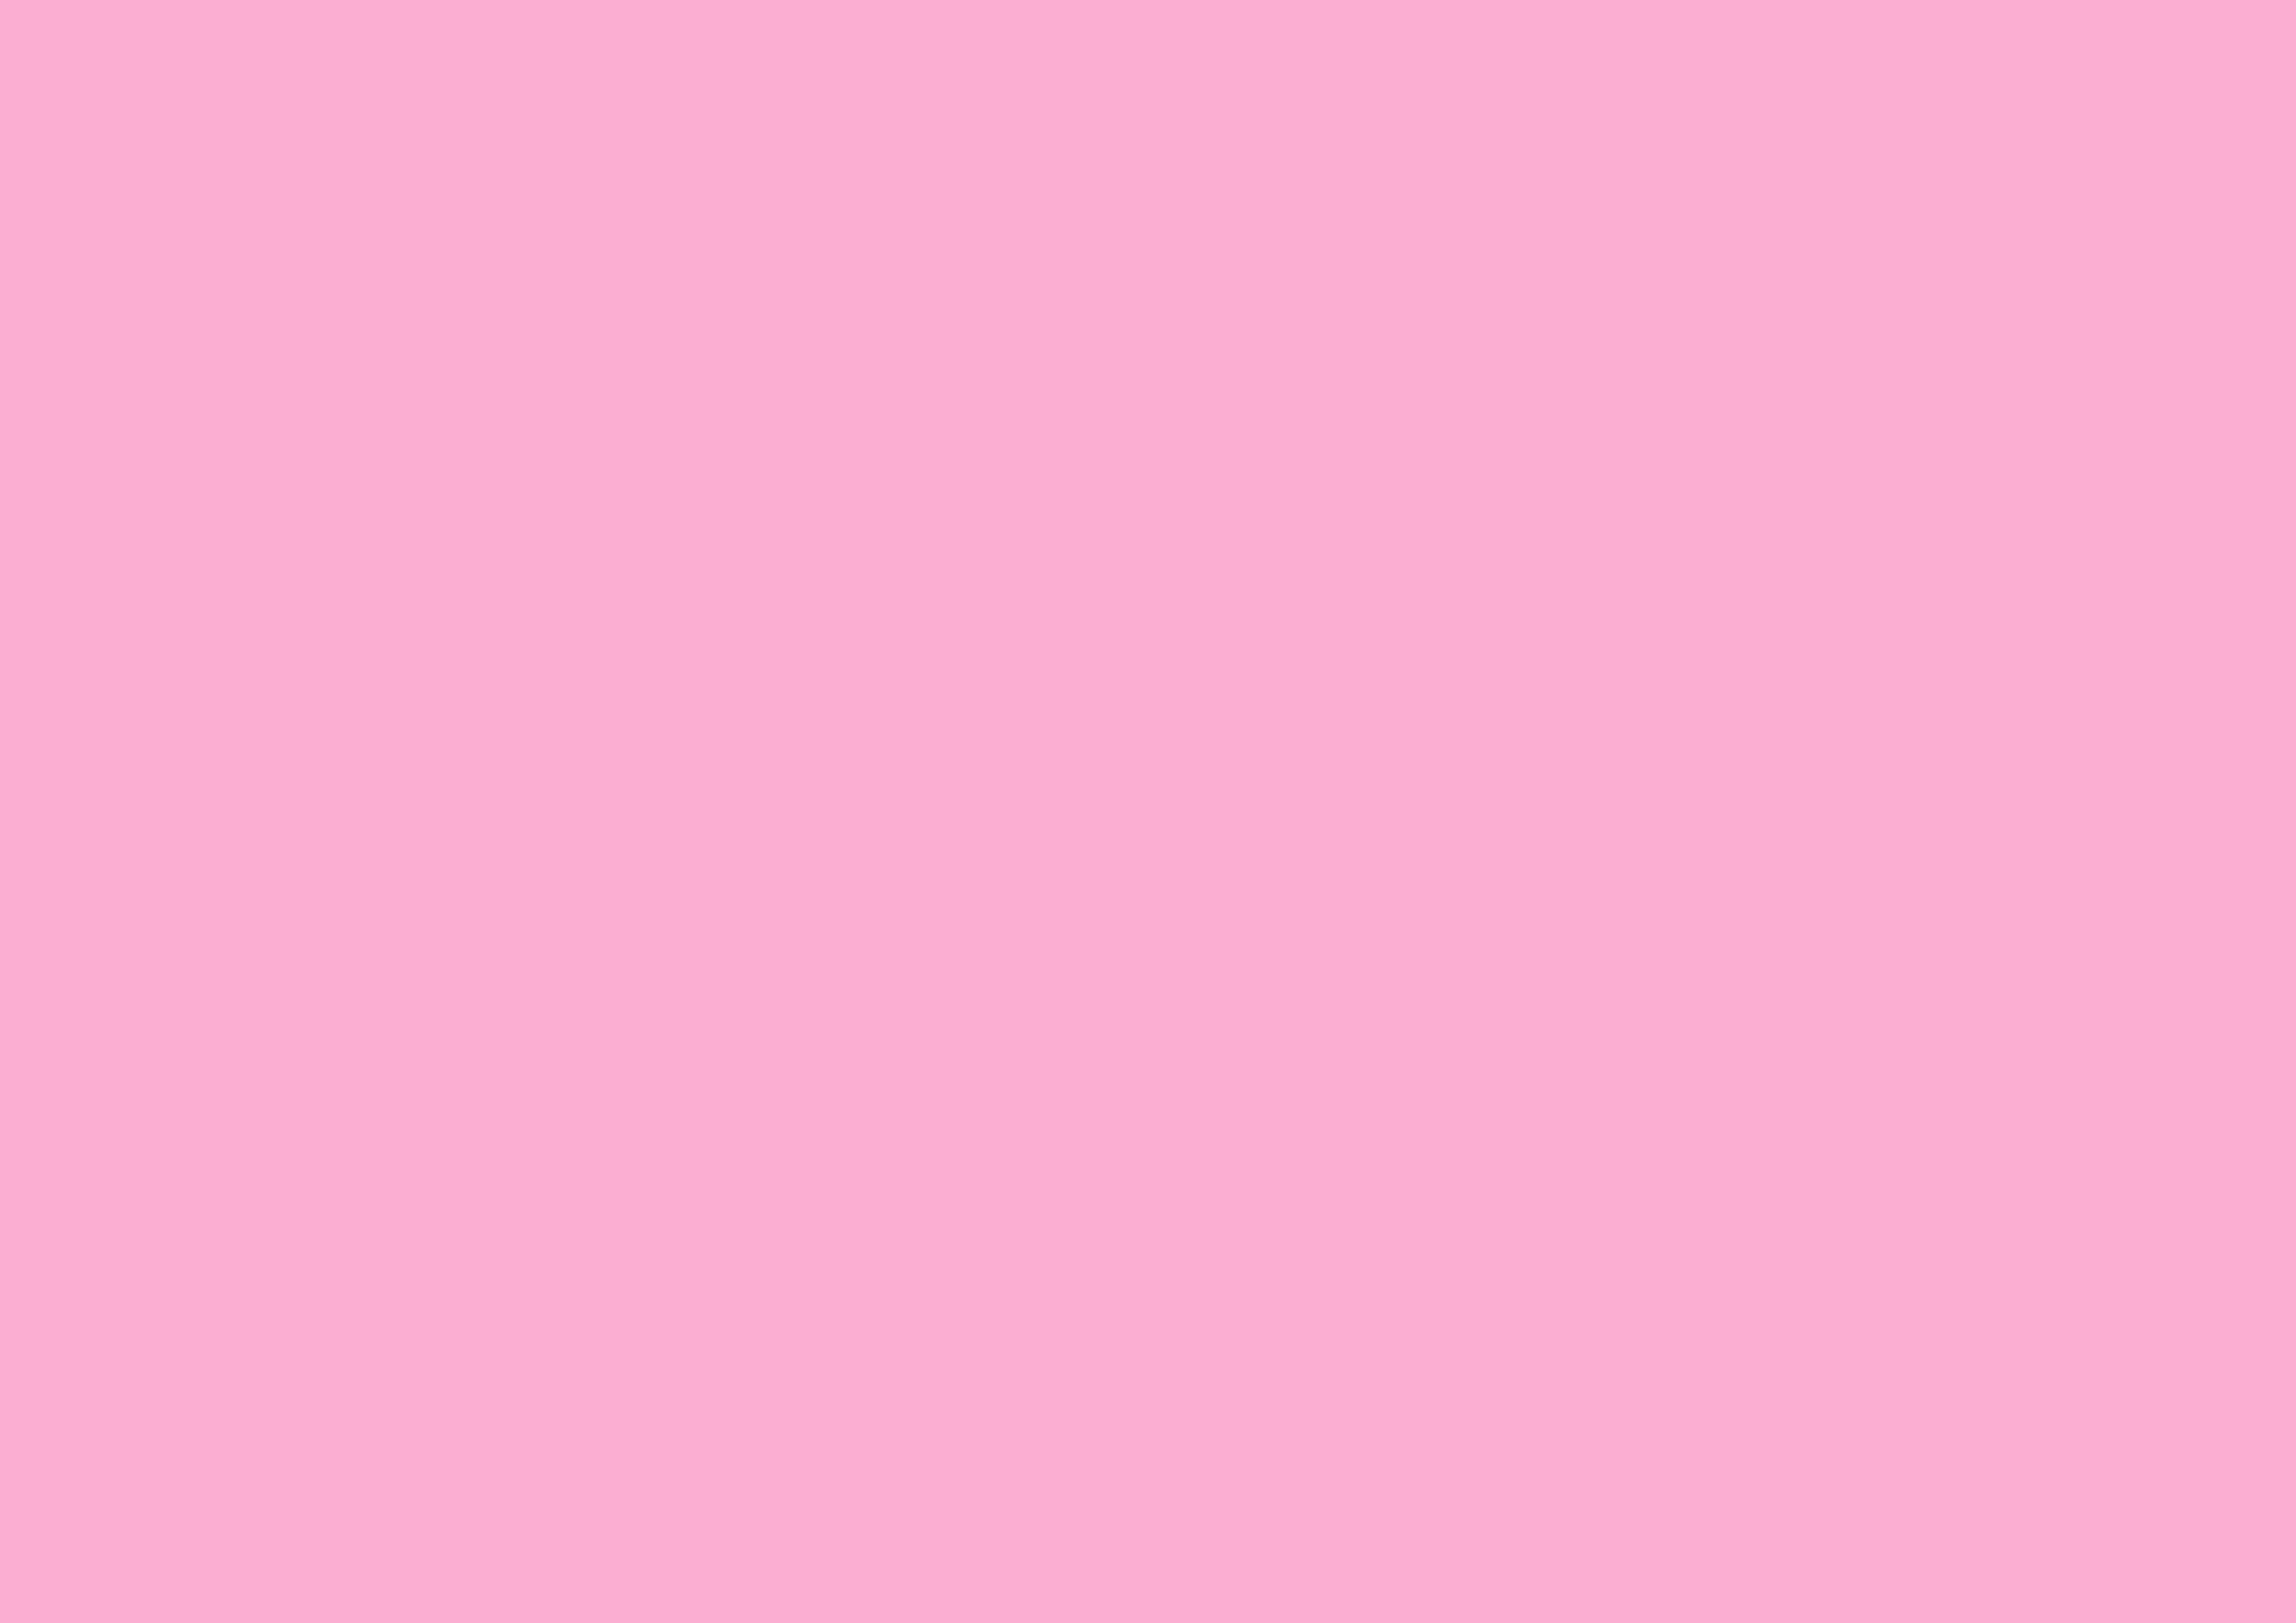 3508x2480 Lavender Pink Solid Color Background